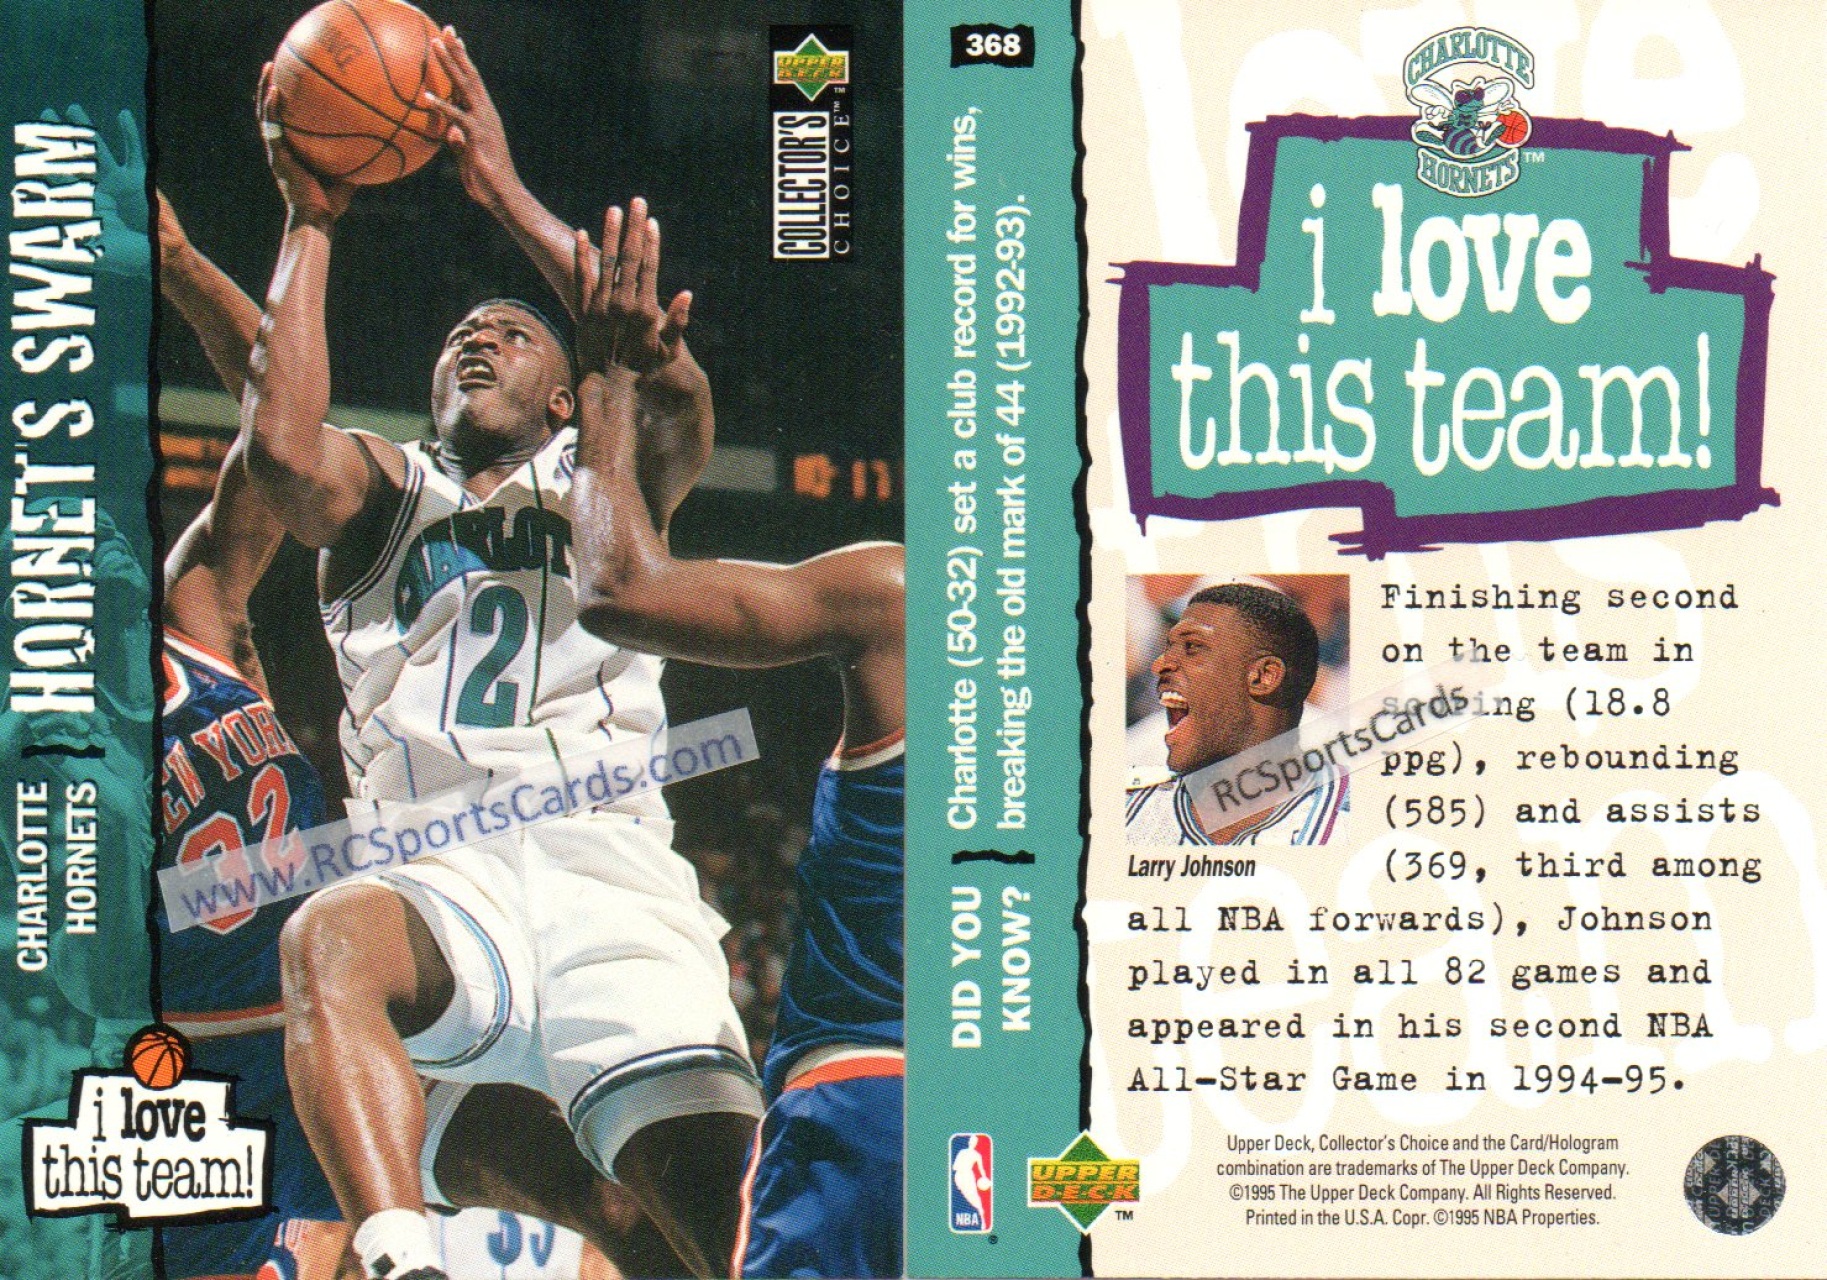 1992 Upper Deck NBA Basketball Card #39 Kendall Gill All-Rookie, Hornets  (I7)